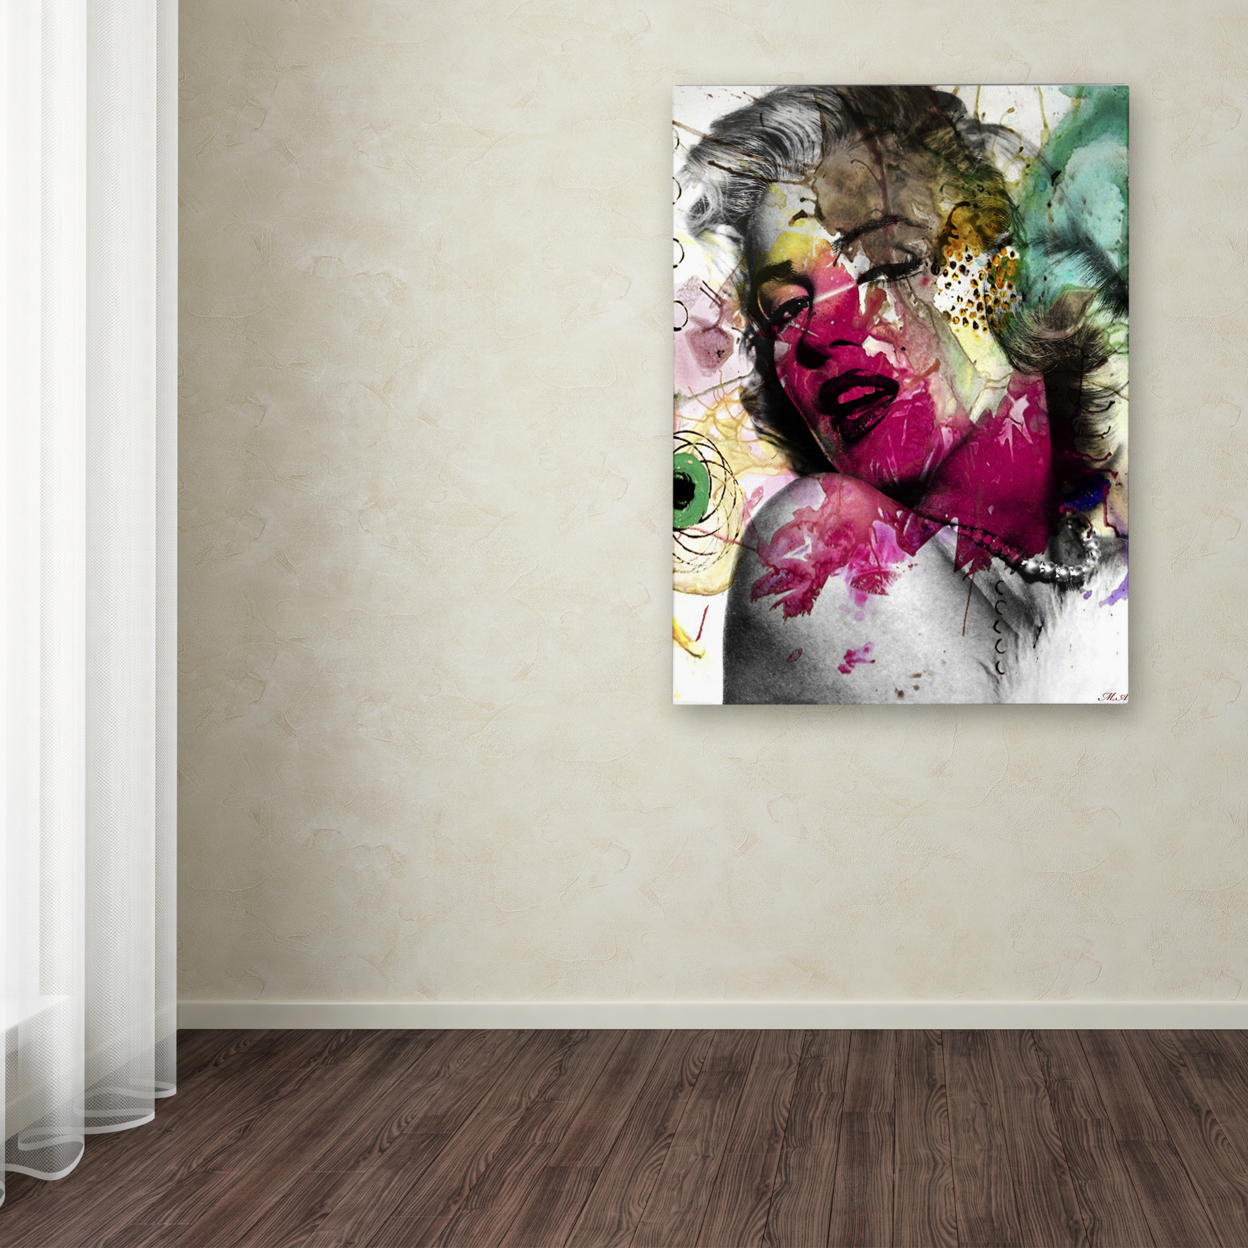 Mark Ashkenazi 'Marilyn Monroe II' Canvas Wall Art 35 X 47 Inches